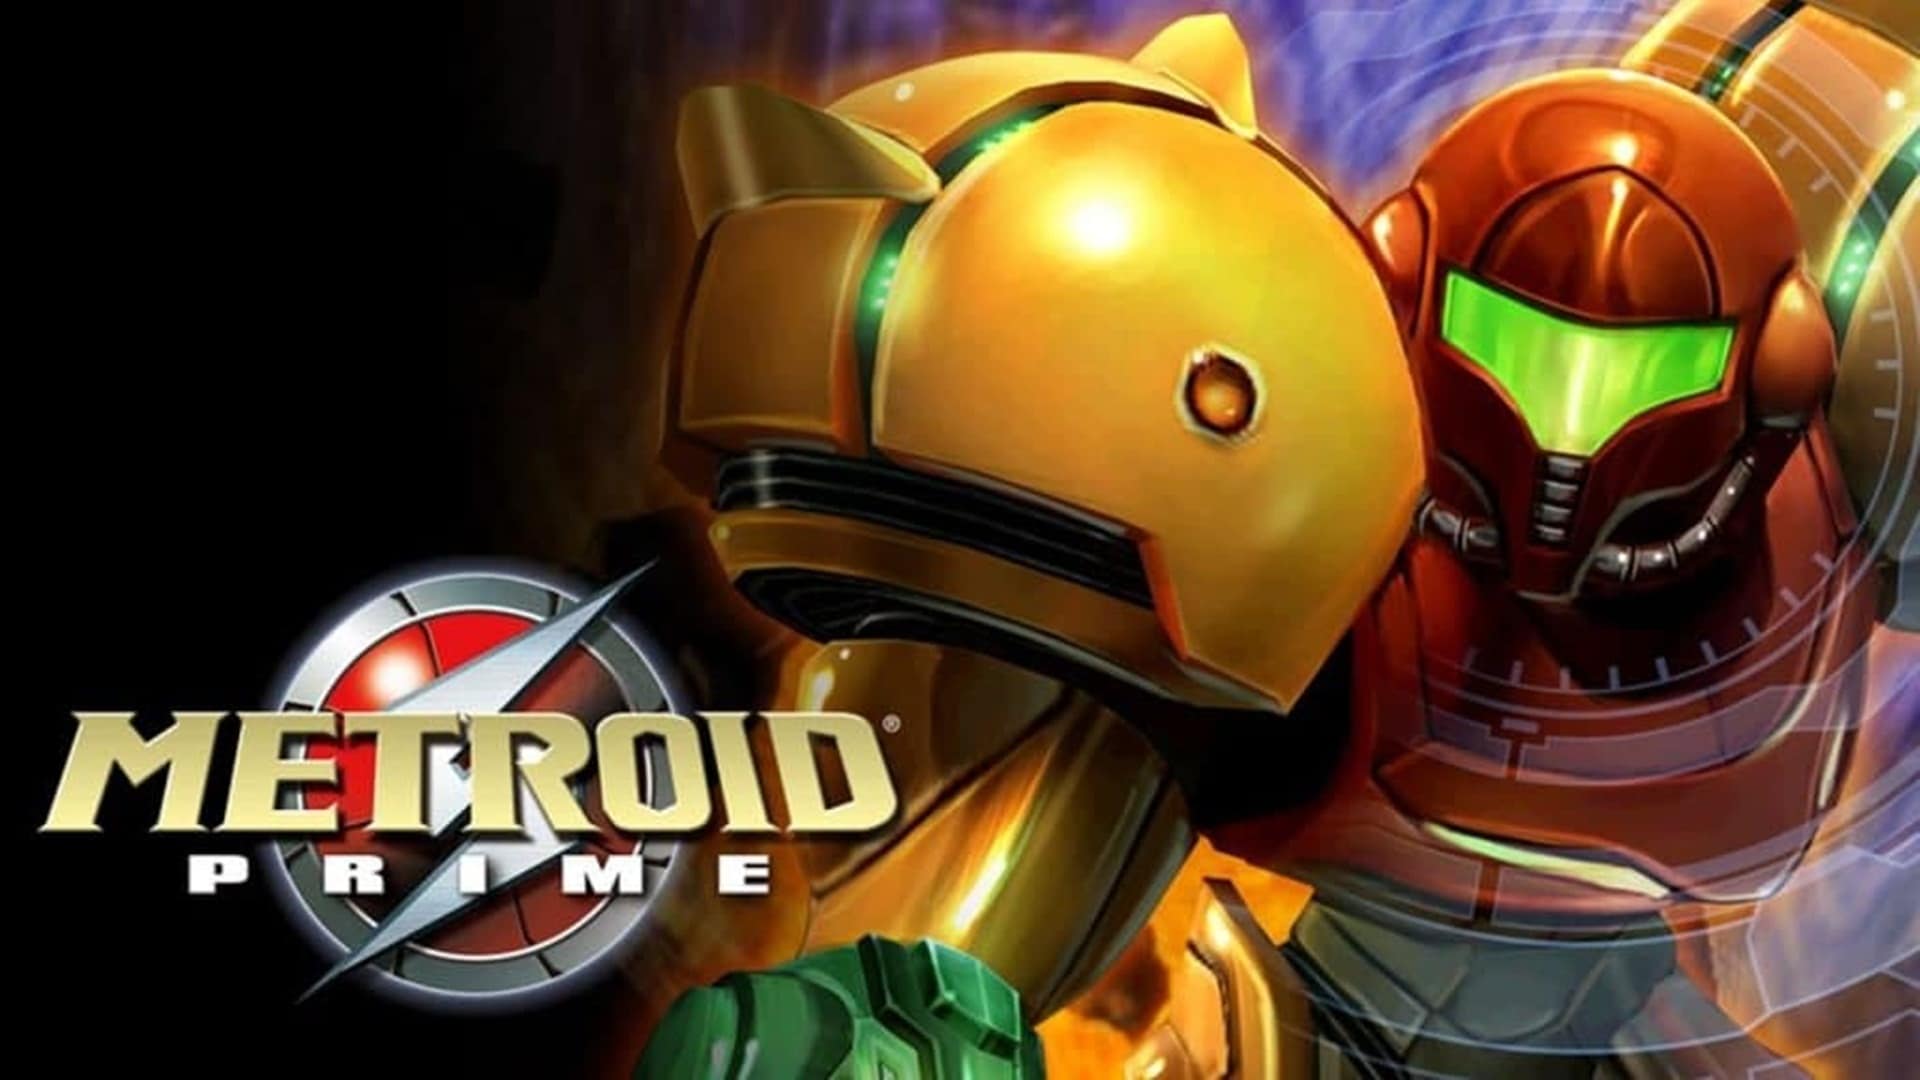 Metroid Prime 1 Remaster se lanzará en la segunda mitad de 2022, según rumor, GamersRD